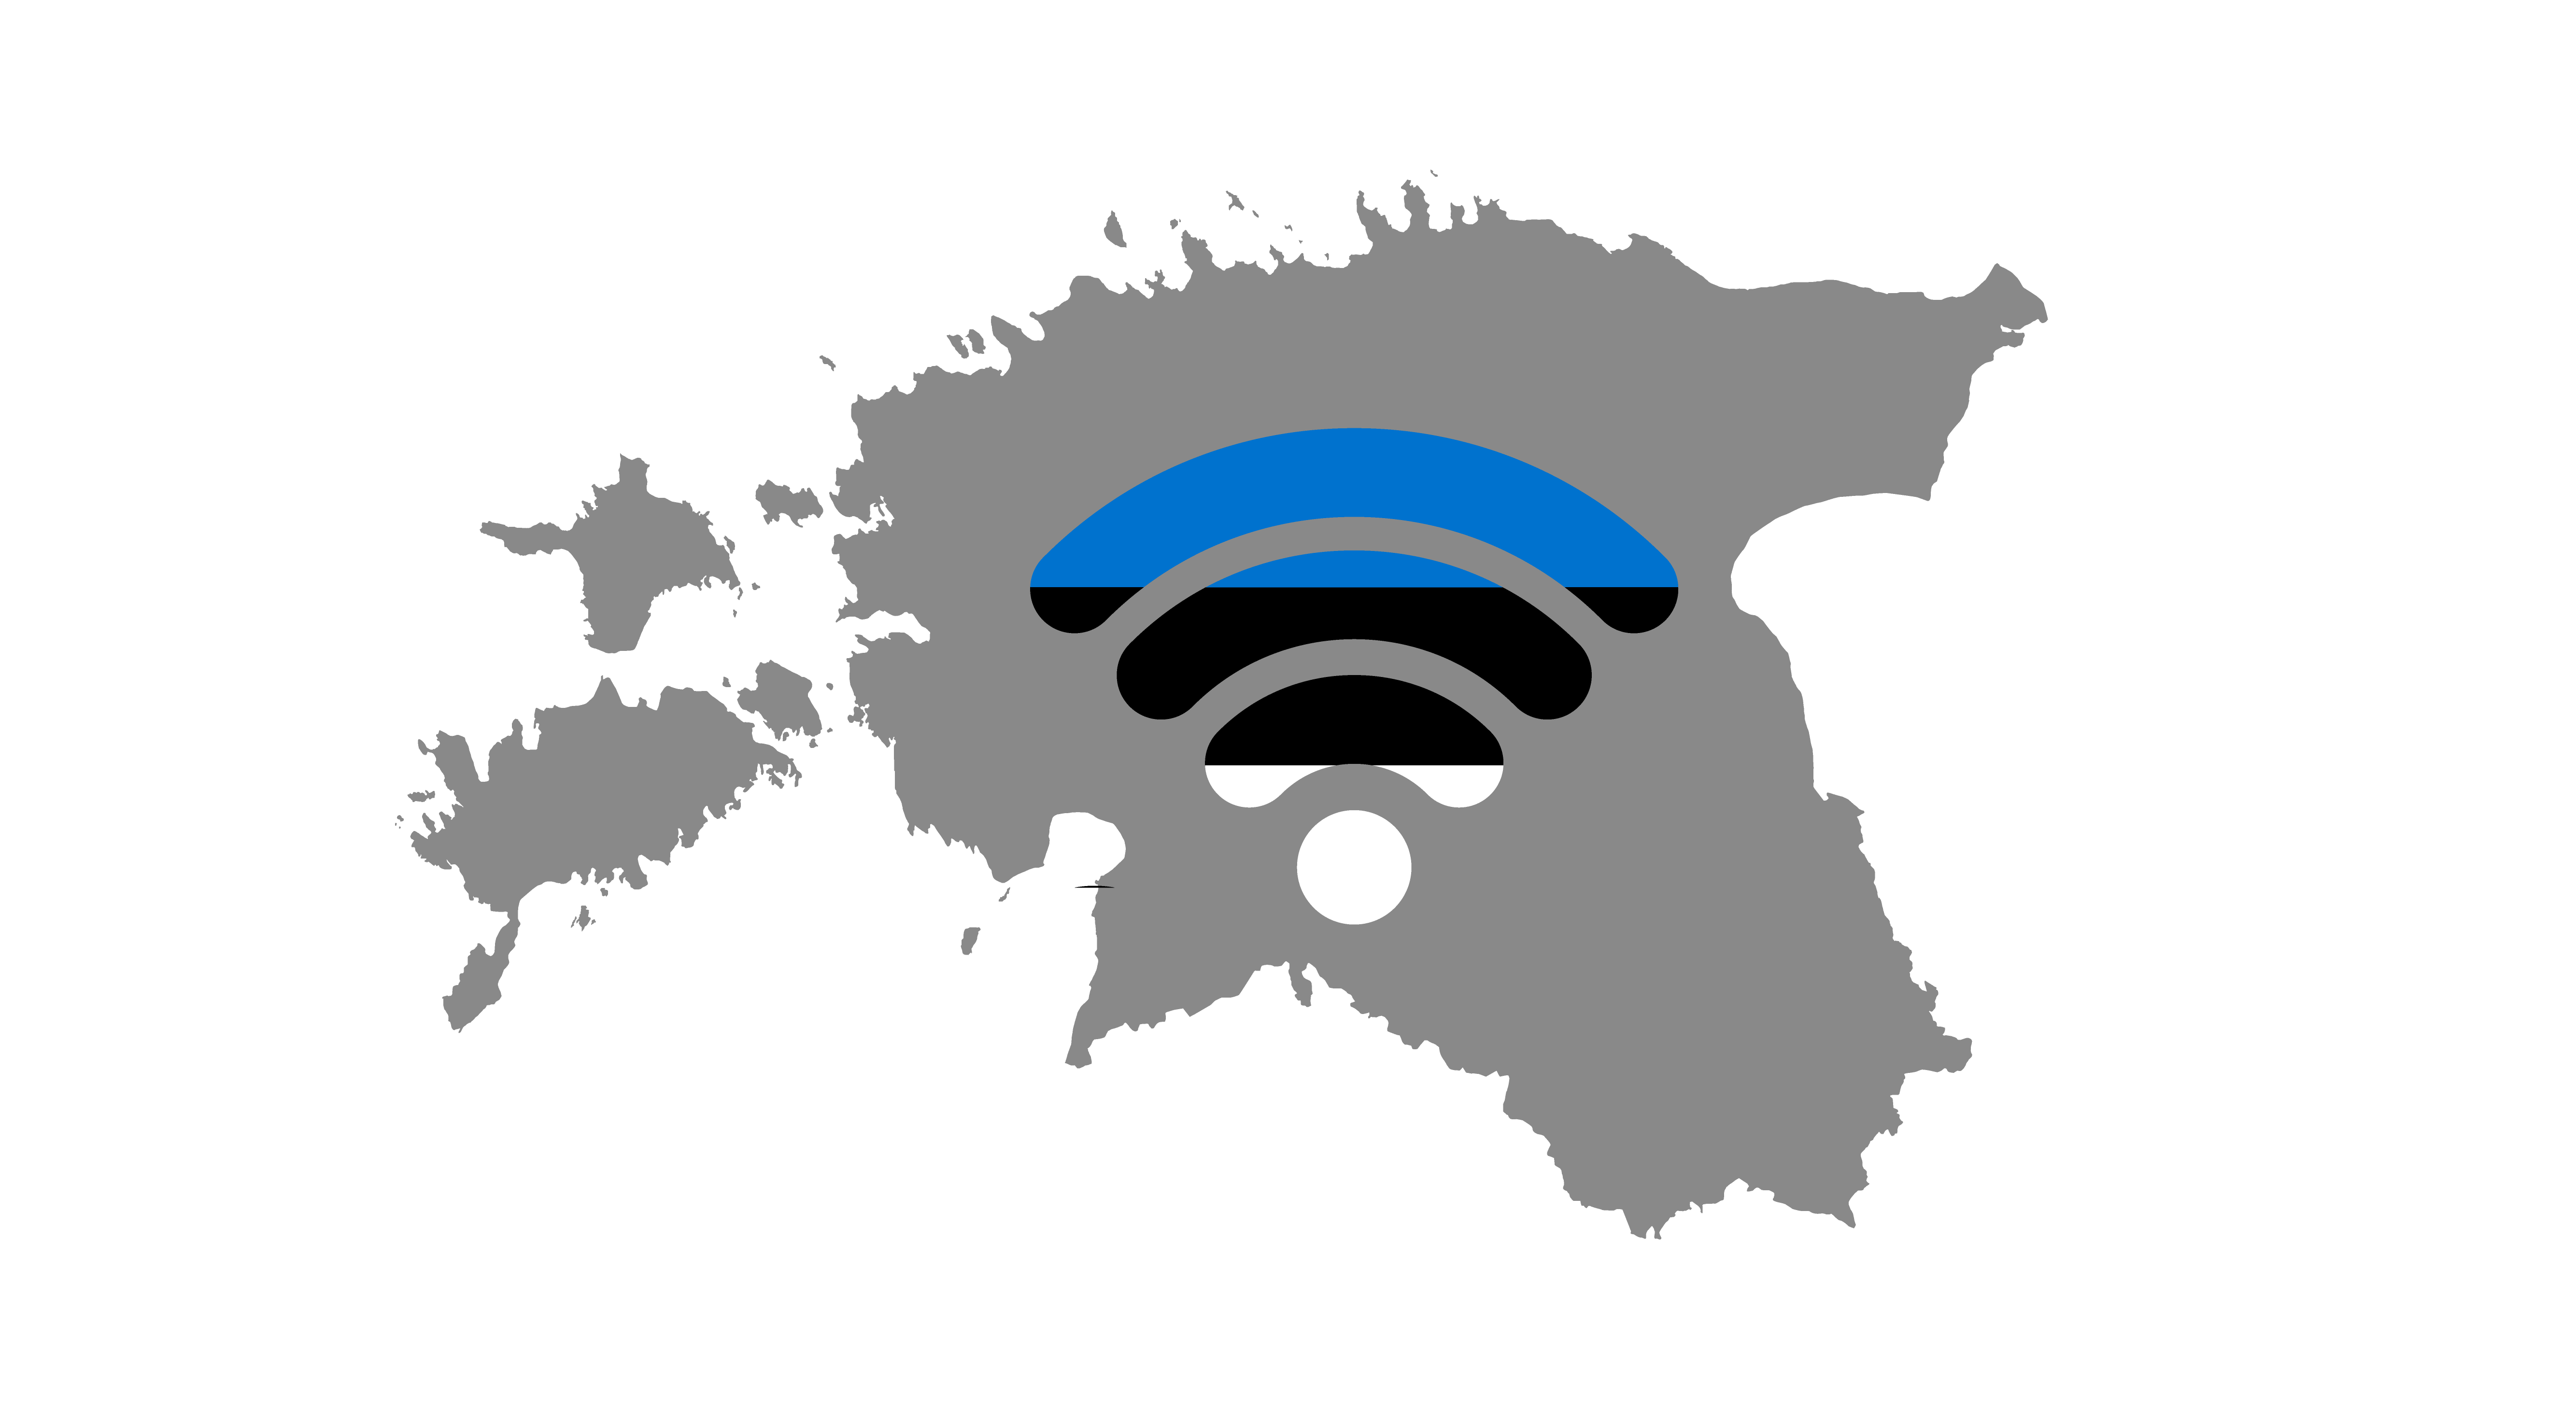 Estonia: First digital nation